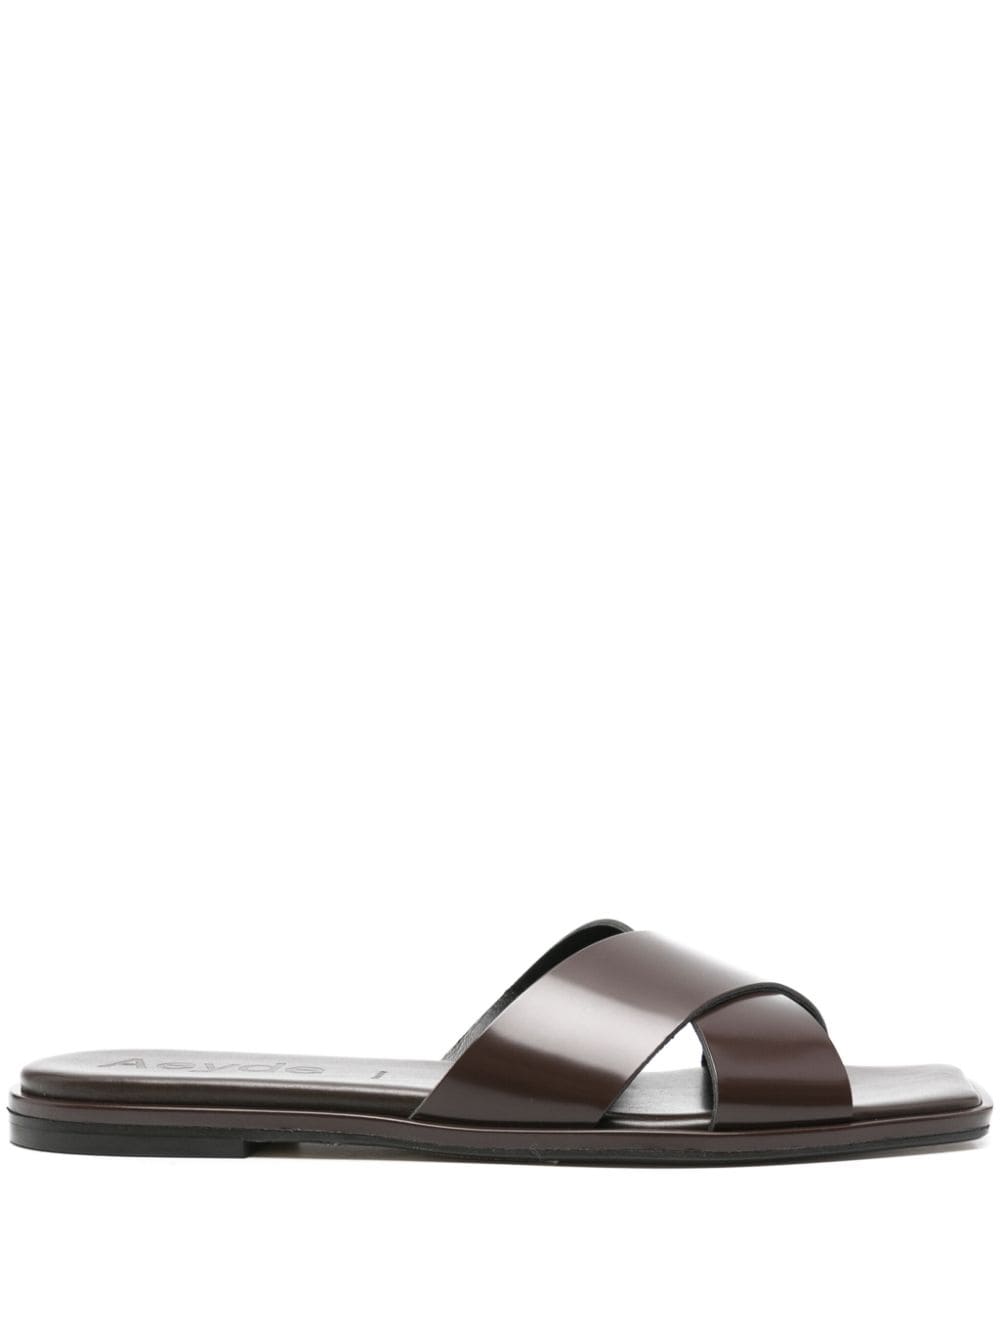 Aeyde Sonia leather sandals - Brown von Aeyde